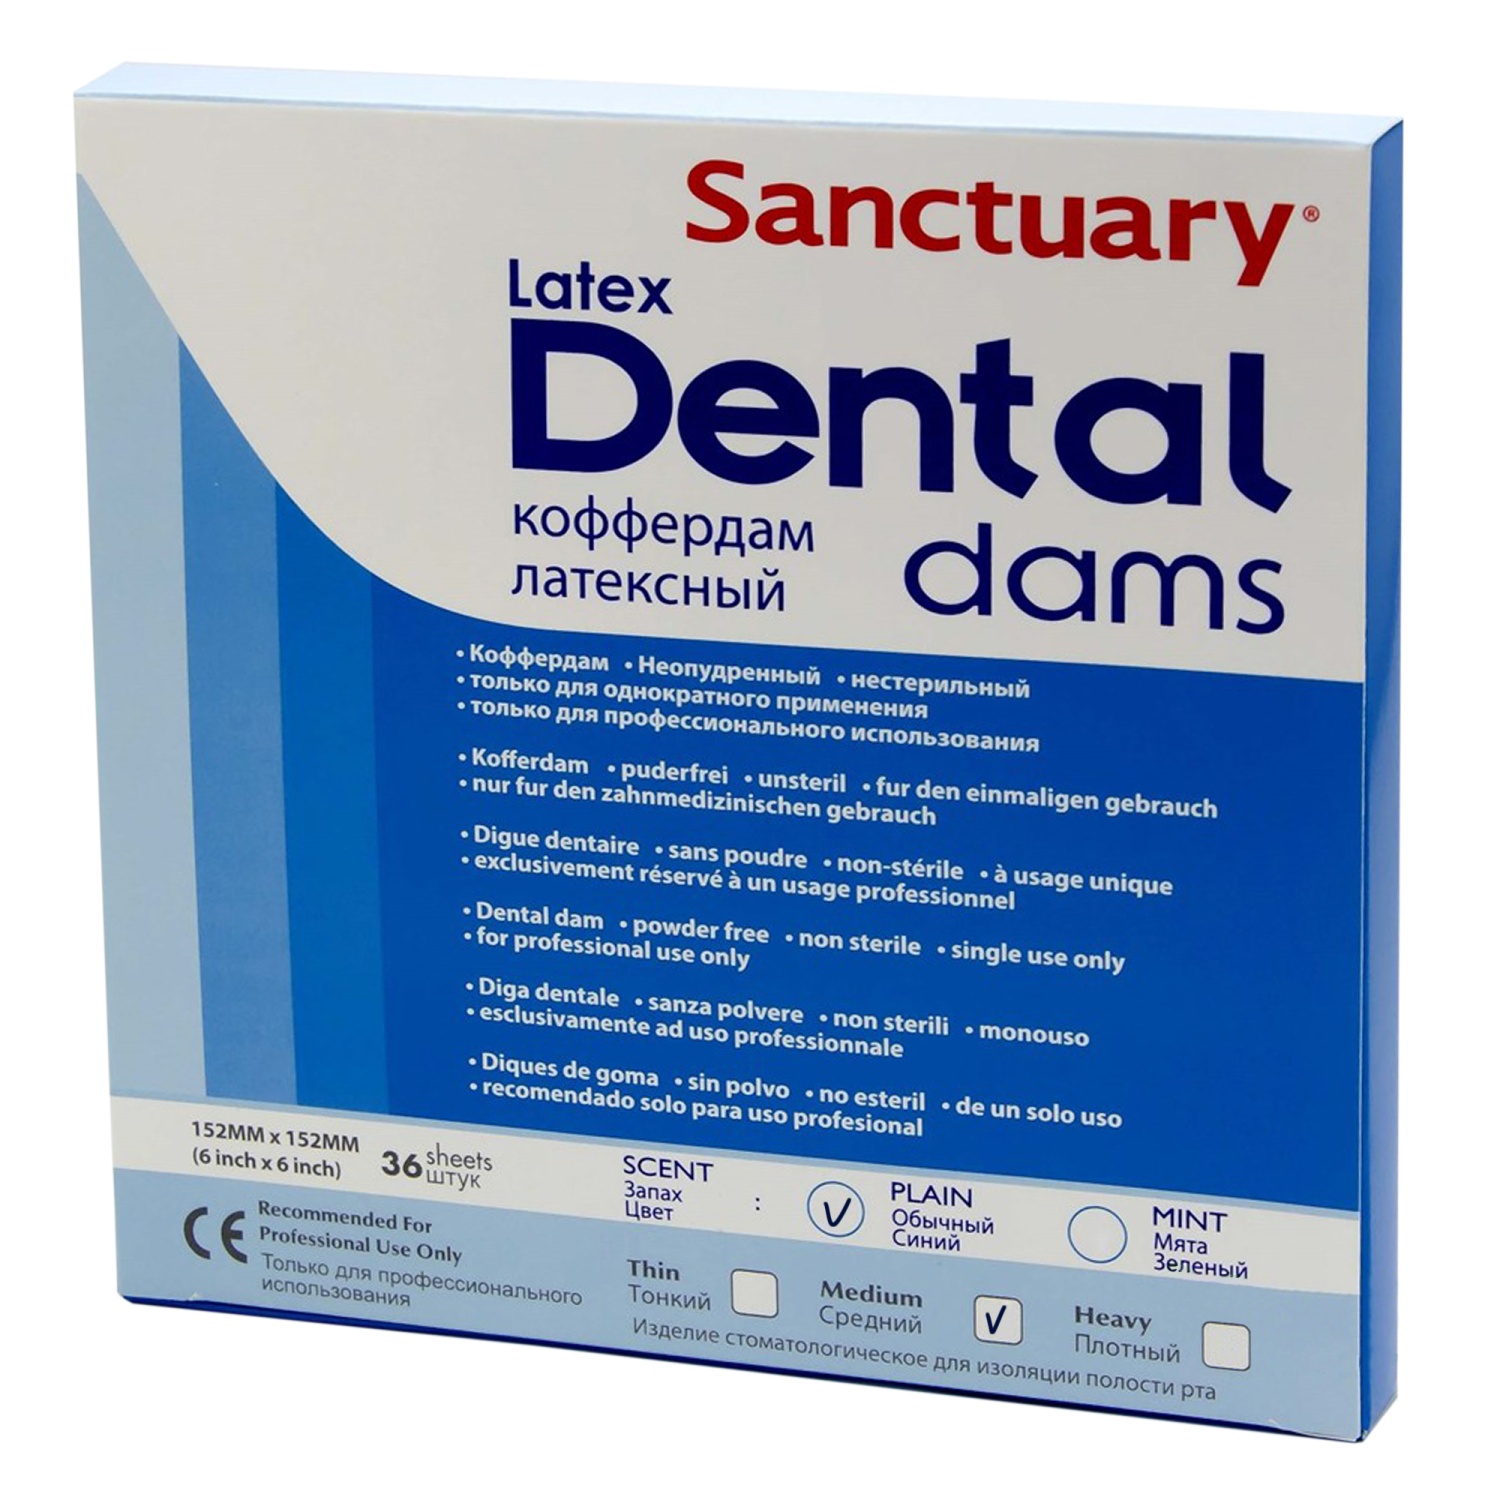 Dental dam urban dictionary